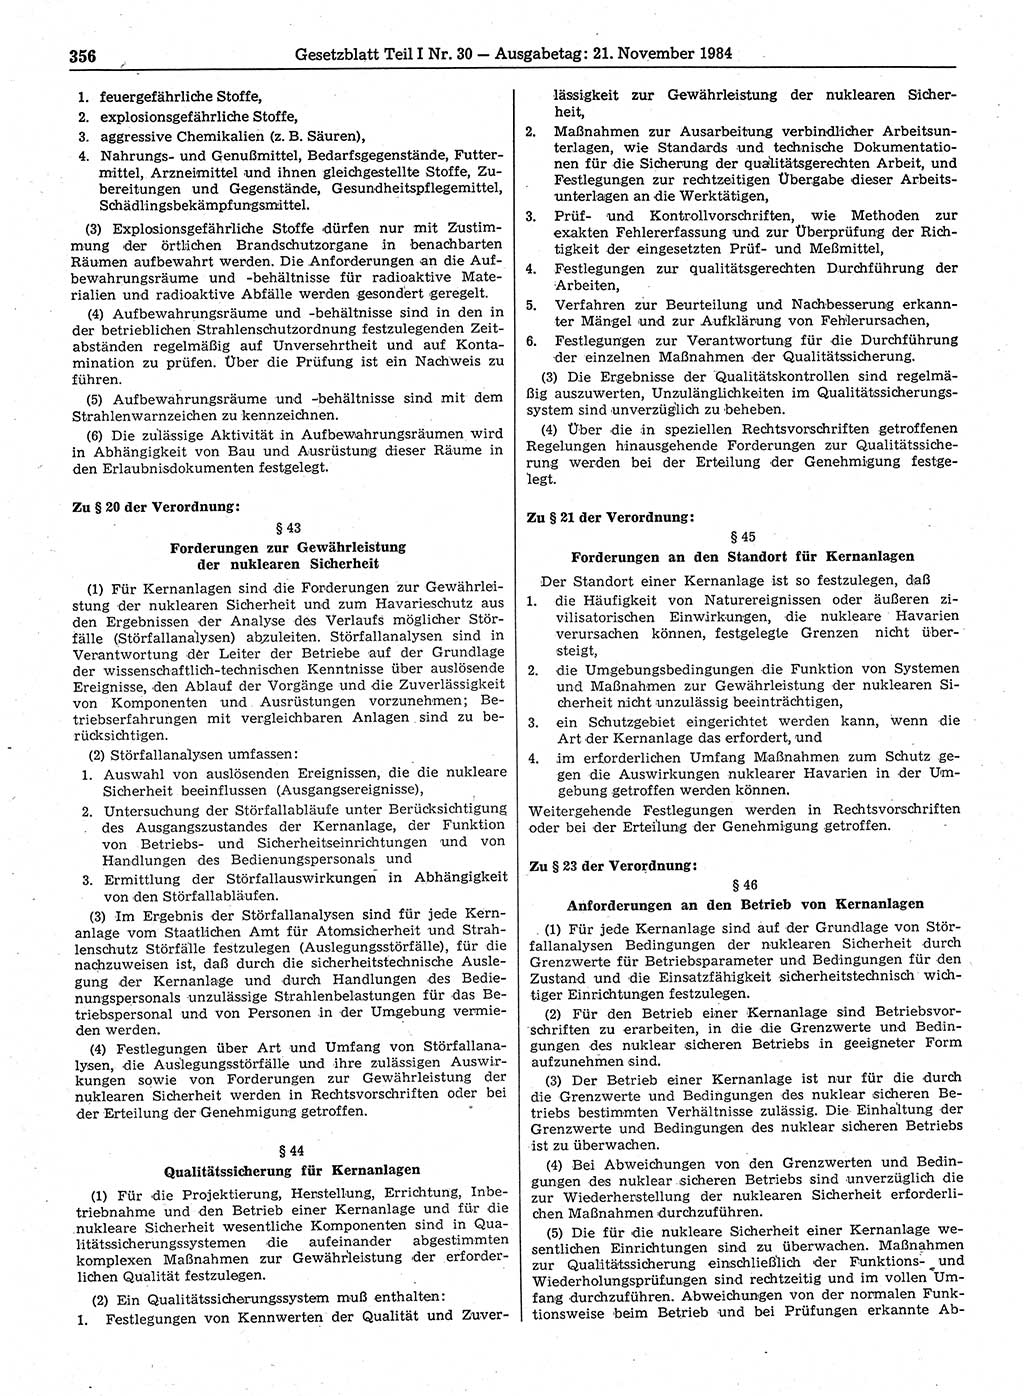 Gesetzblatt (GBl.) der Deutschen Demokratischen Republik (DDR) Teil Ⅰ 1984, Seite 356 (GBl. DDR Ⅰ 1984, S. 356)